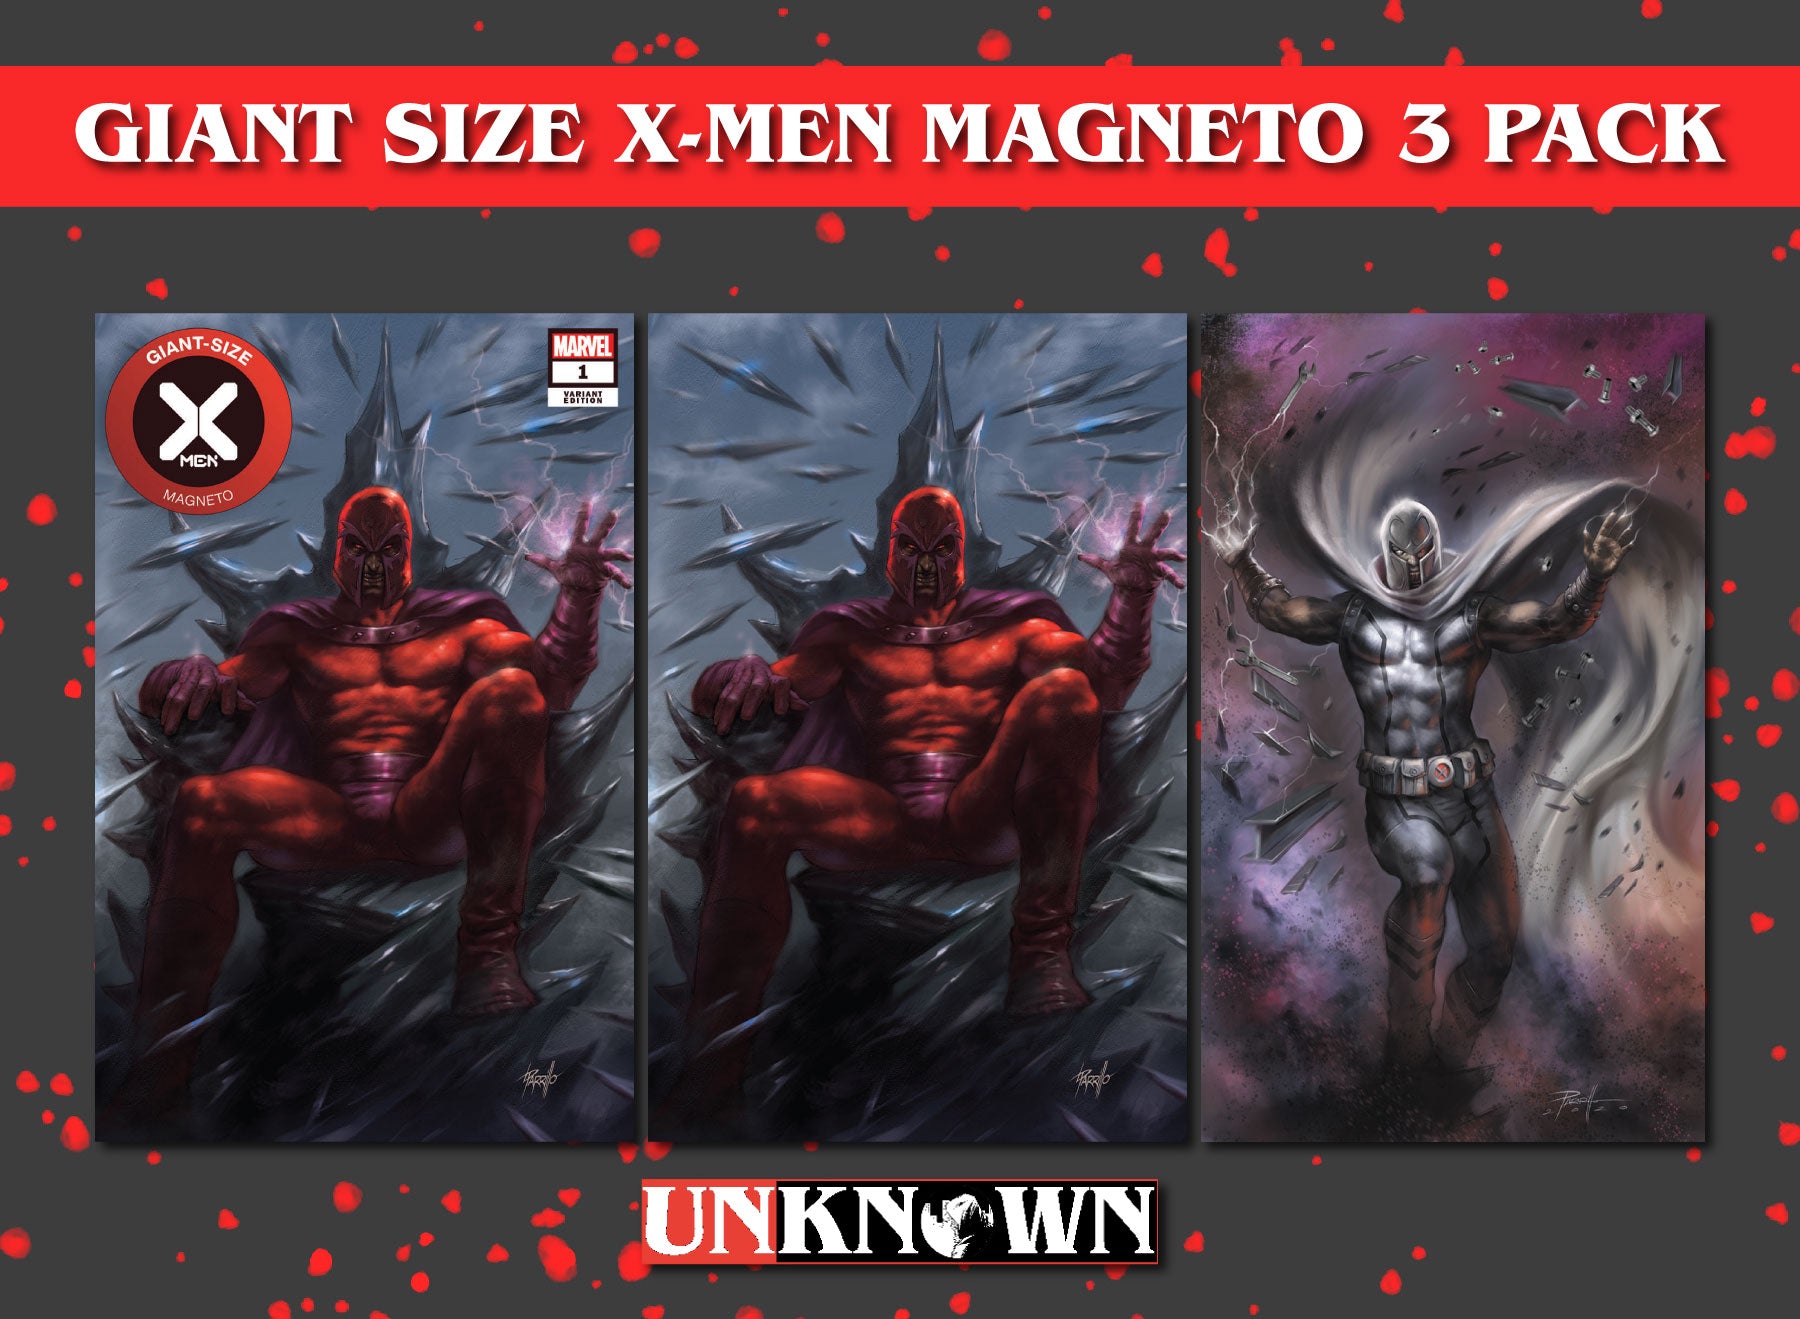 [3 PACK] GIANT-SIZE X-MEN MAGNETO #1 UNKNOWN COMICS LUCIO PARRILLO EXCLUSIVE VAR DX (07/15/2020)